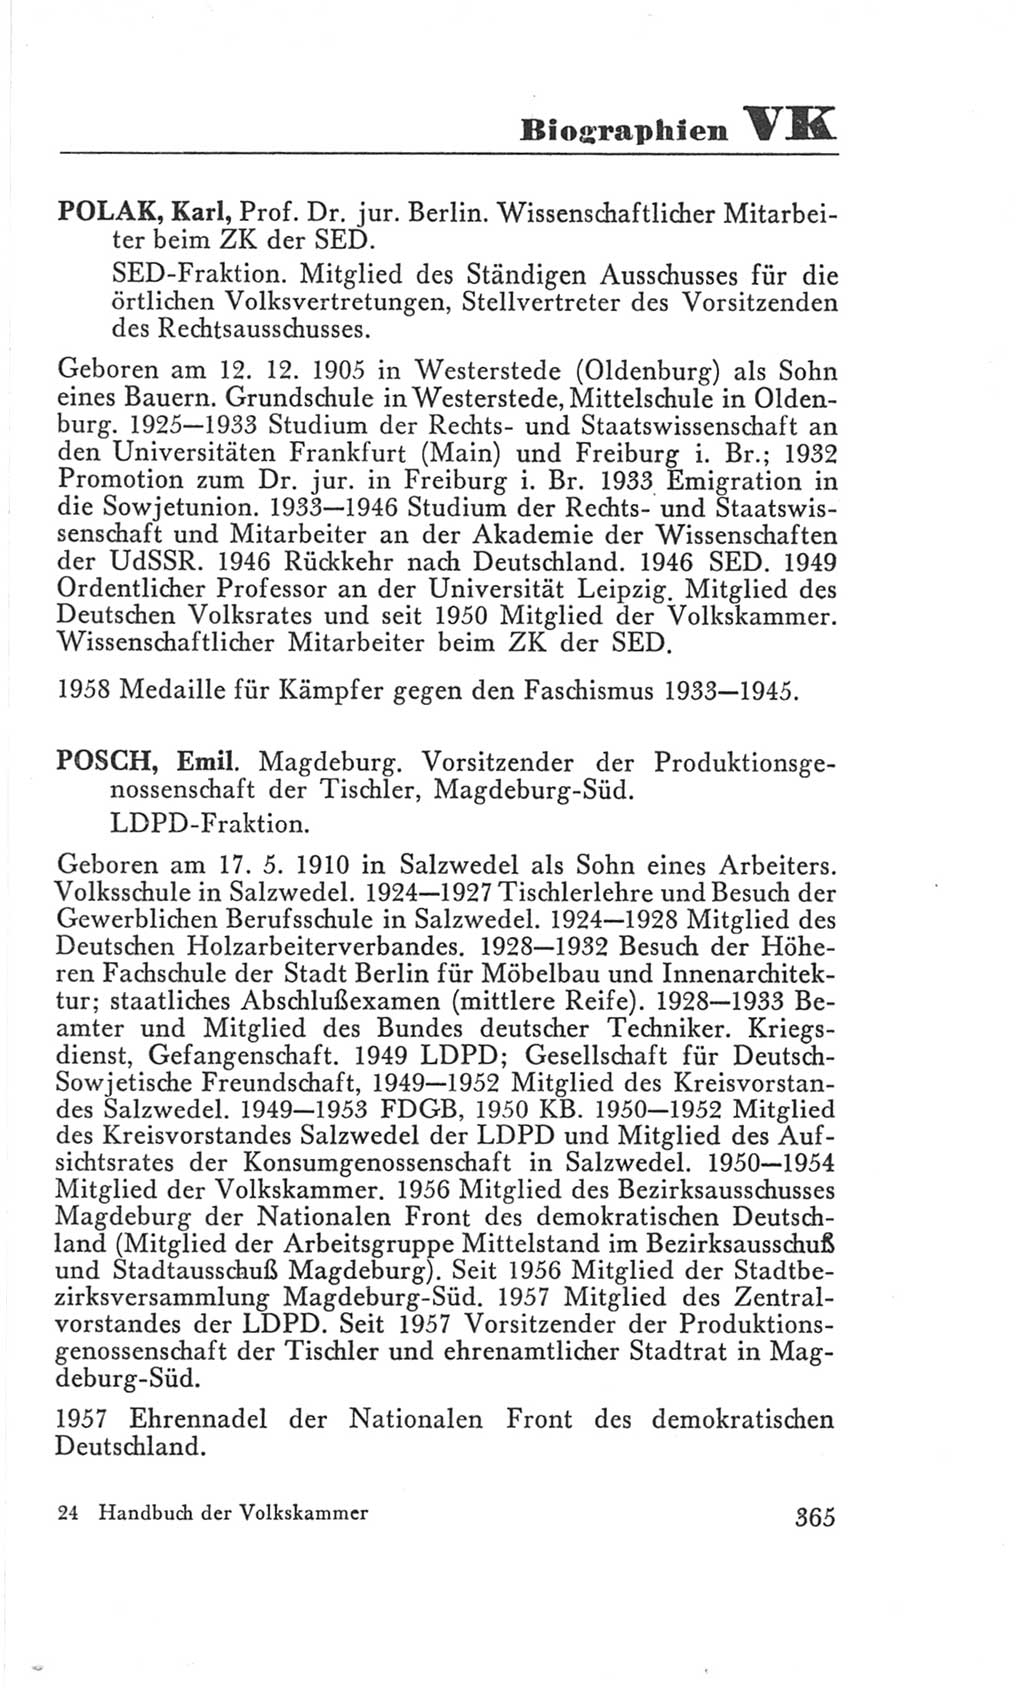 Handbuch der Volkskammer (VK) der Deutschen Demokratischen Republik (DDR), 3. Wahlperiode 1958-1963, Seite 365 (Hdb. VK. DDR 3. WP. 1958-1963, S. 365)